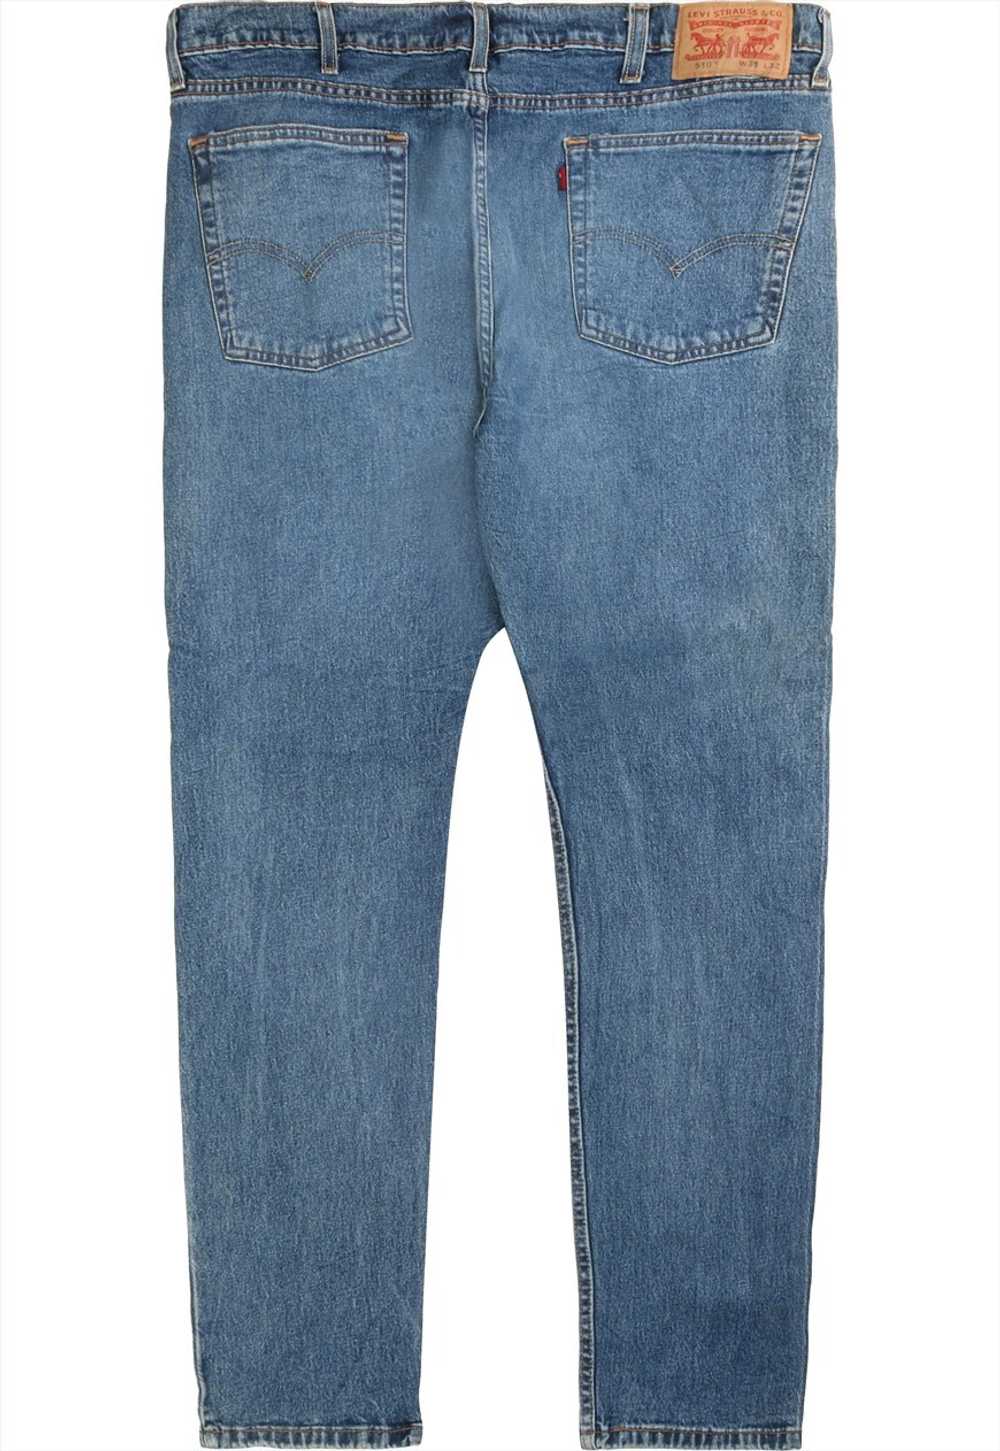 Vintage 90's Levi's Jeans / Pants 510 Denim Slim … - image 1